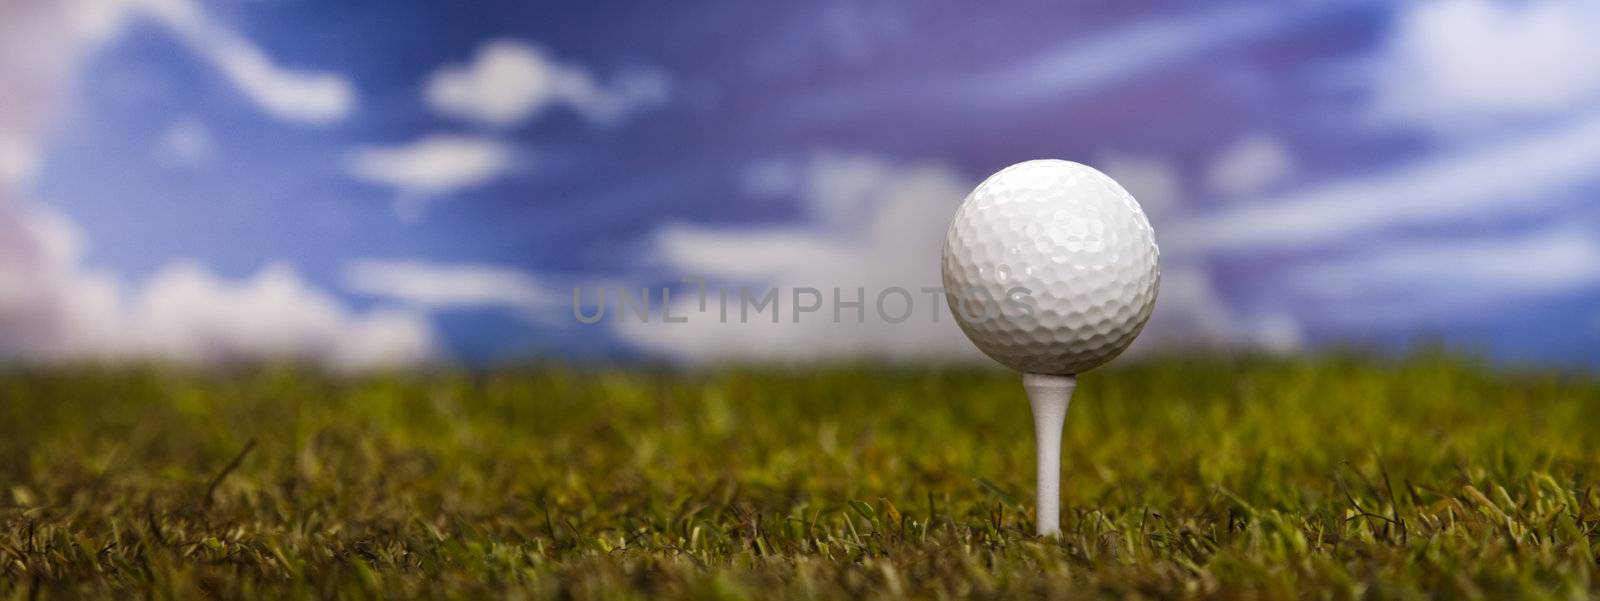 Golf ball on green grass over a blue sky by JanPietruszka